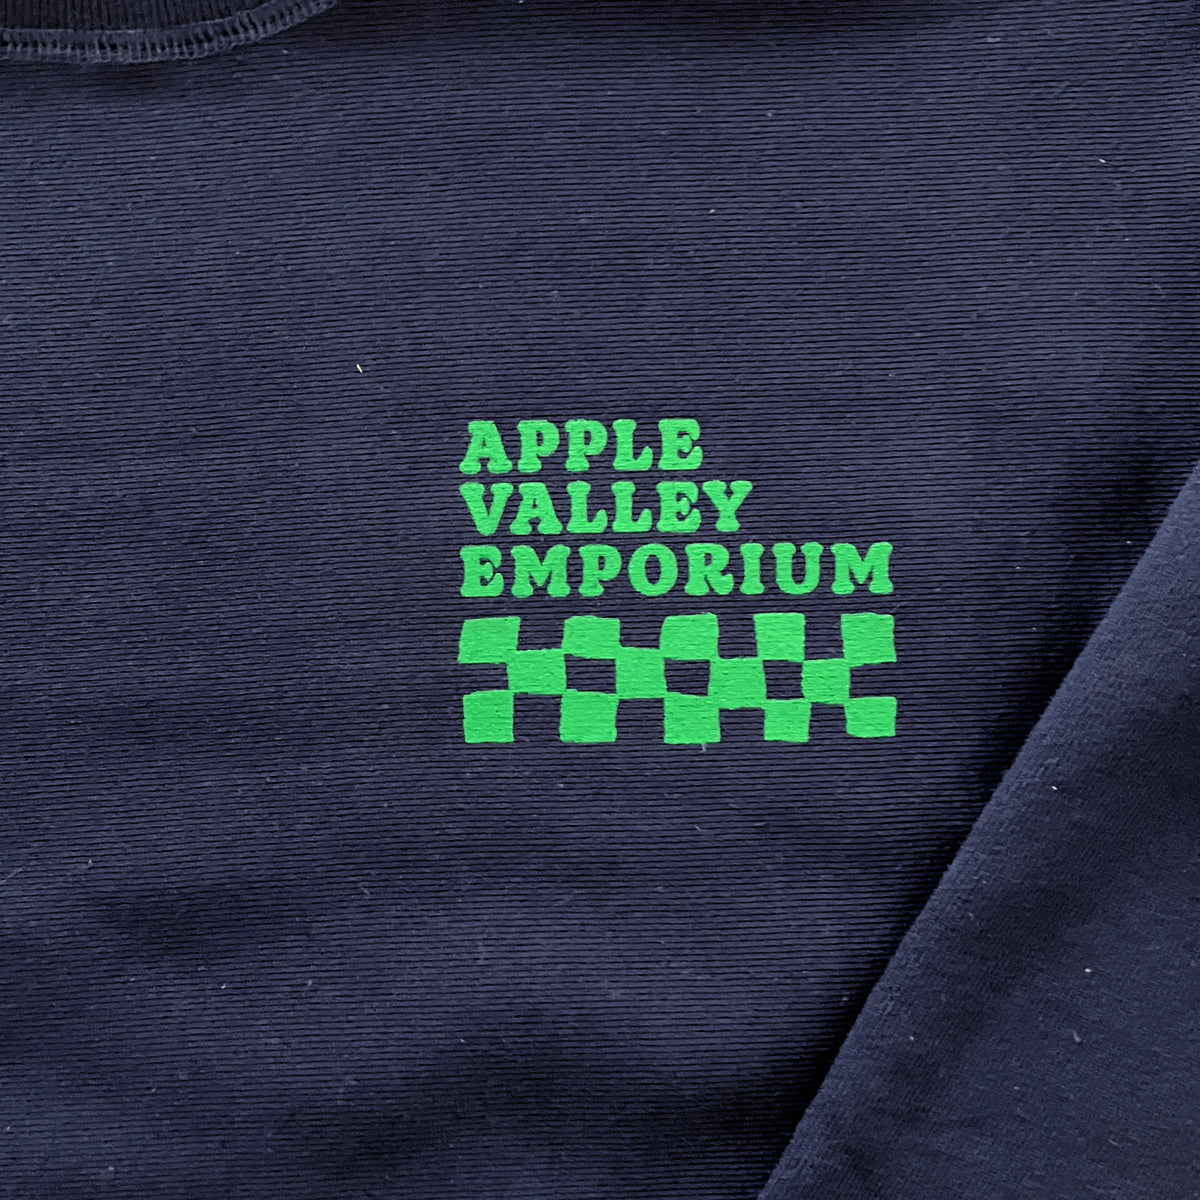 AVE Green Checkered Unisex Crewneck Sweatshirt - Apple Valley Emporium